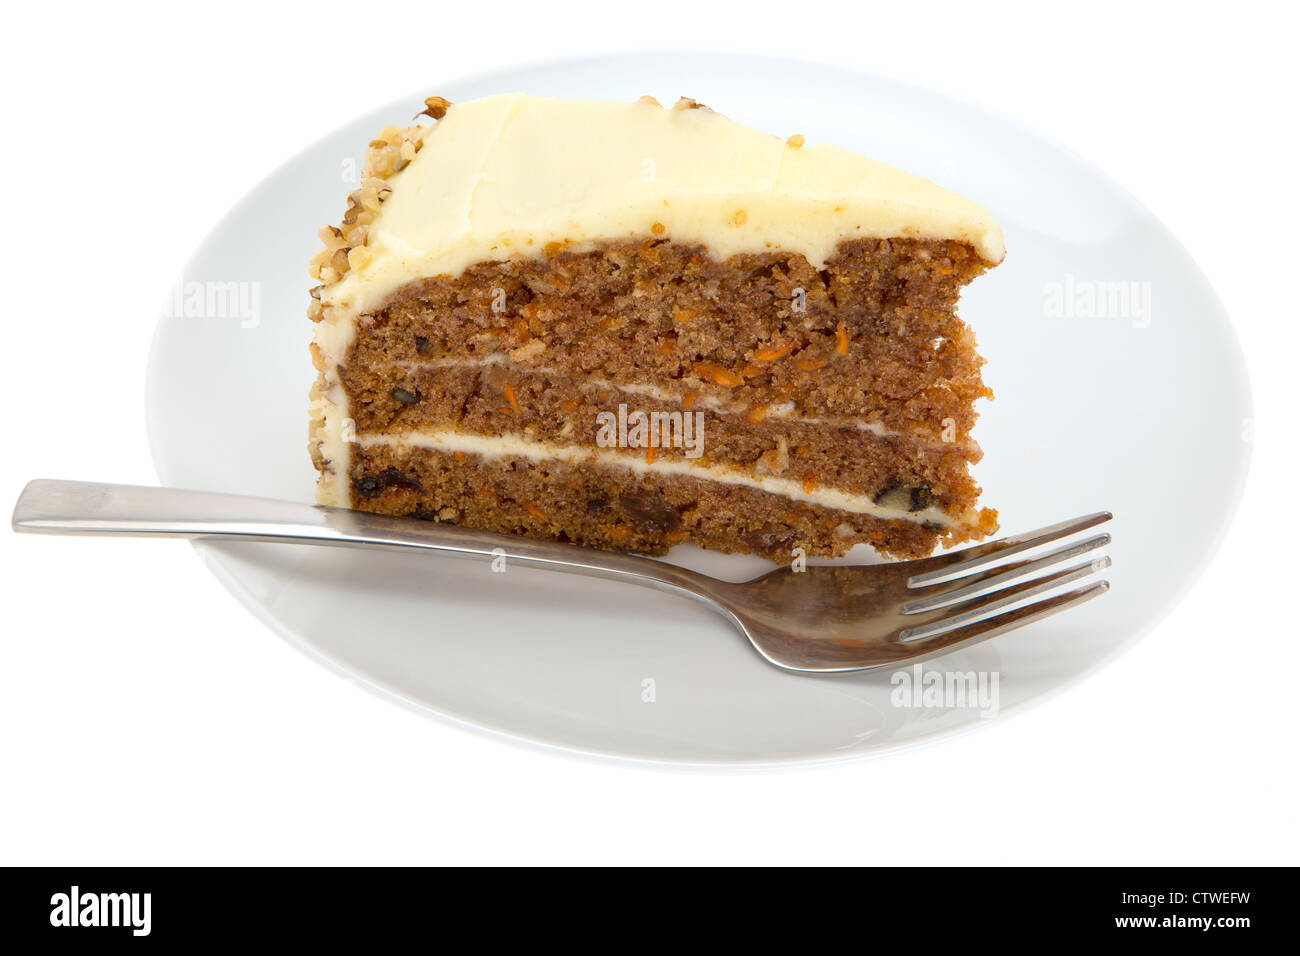 Tranche de gâteau de carotte sur une plaque blanche avec une fourchette - bien éclairée avec une faible profondeur de champ Banque D'Images